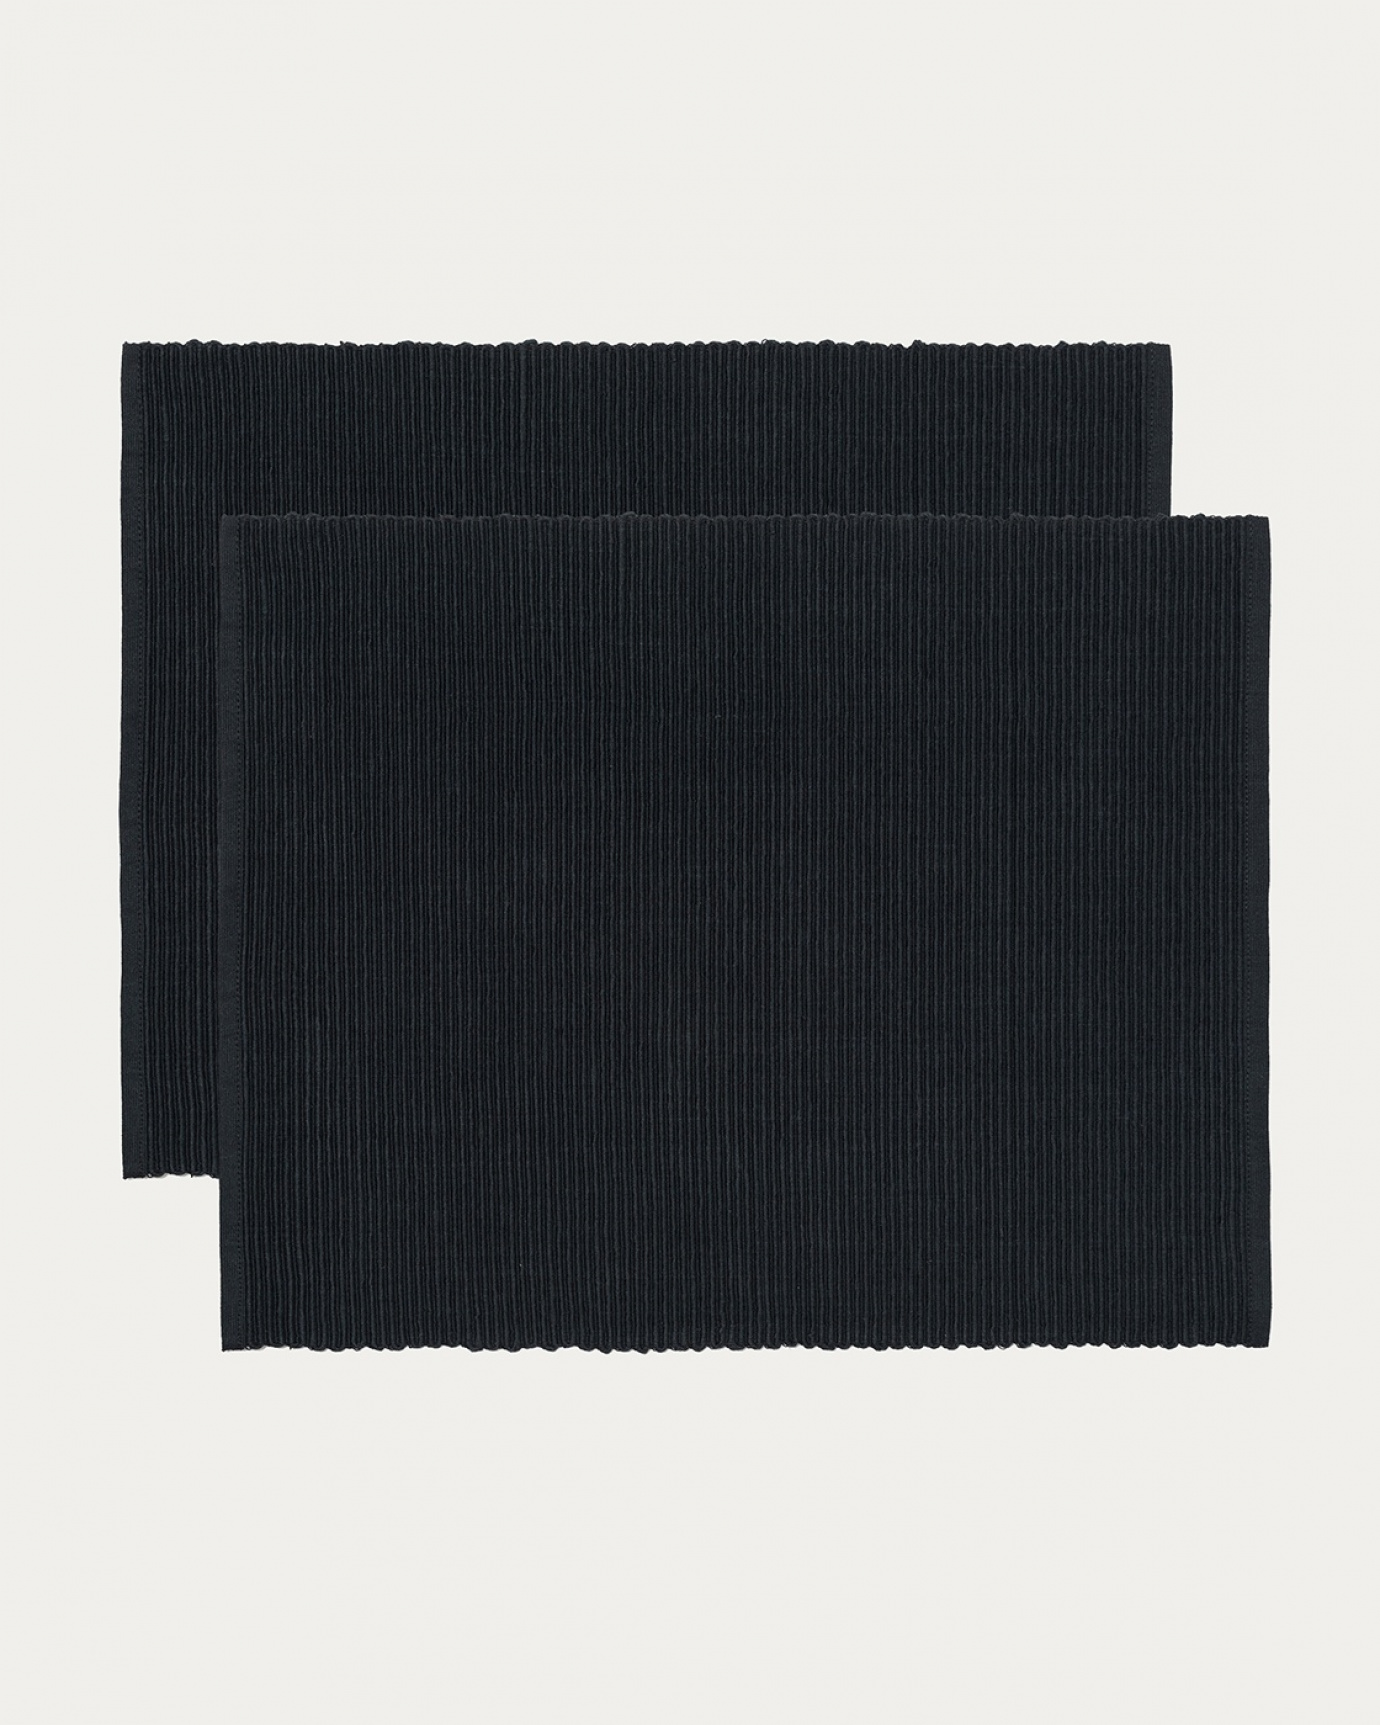 Produktbild svart UNI bordstablett av mjuk bomull i ribbad kvalité från LINUM DESIGN. Storlek 35x46 cm och säljs i 2-pack.